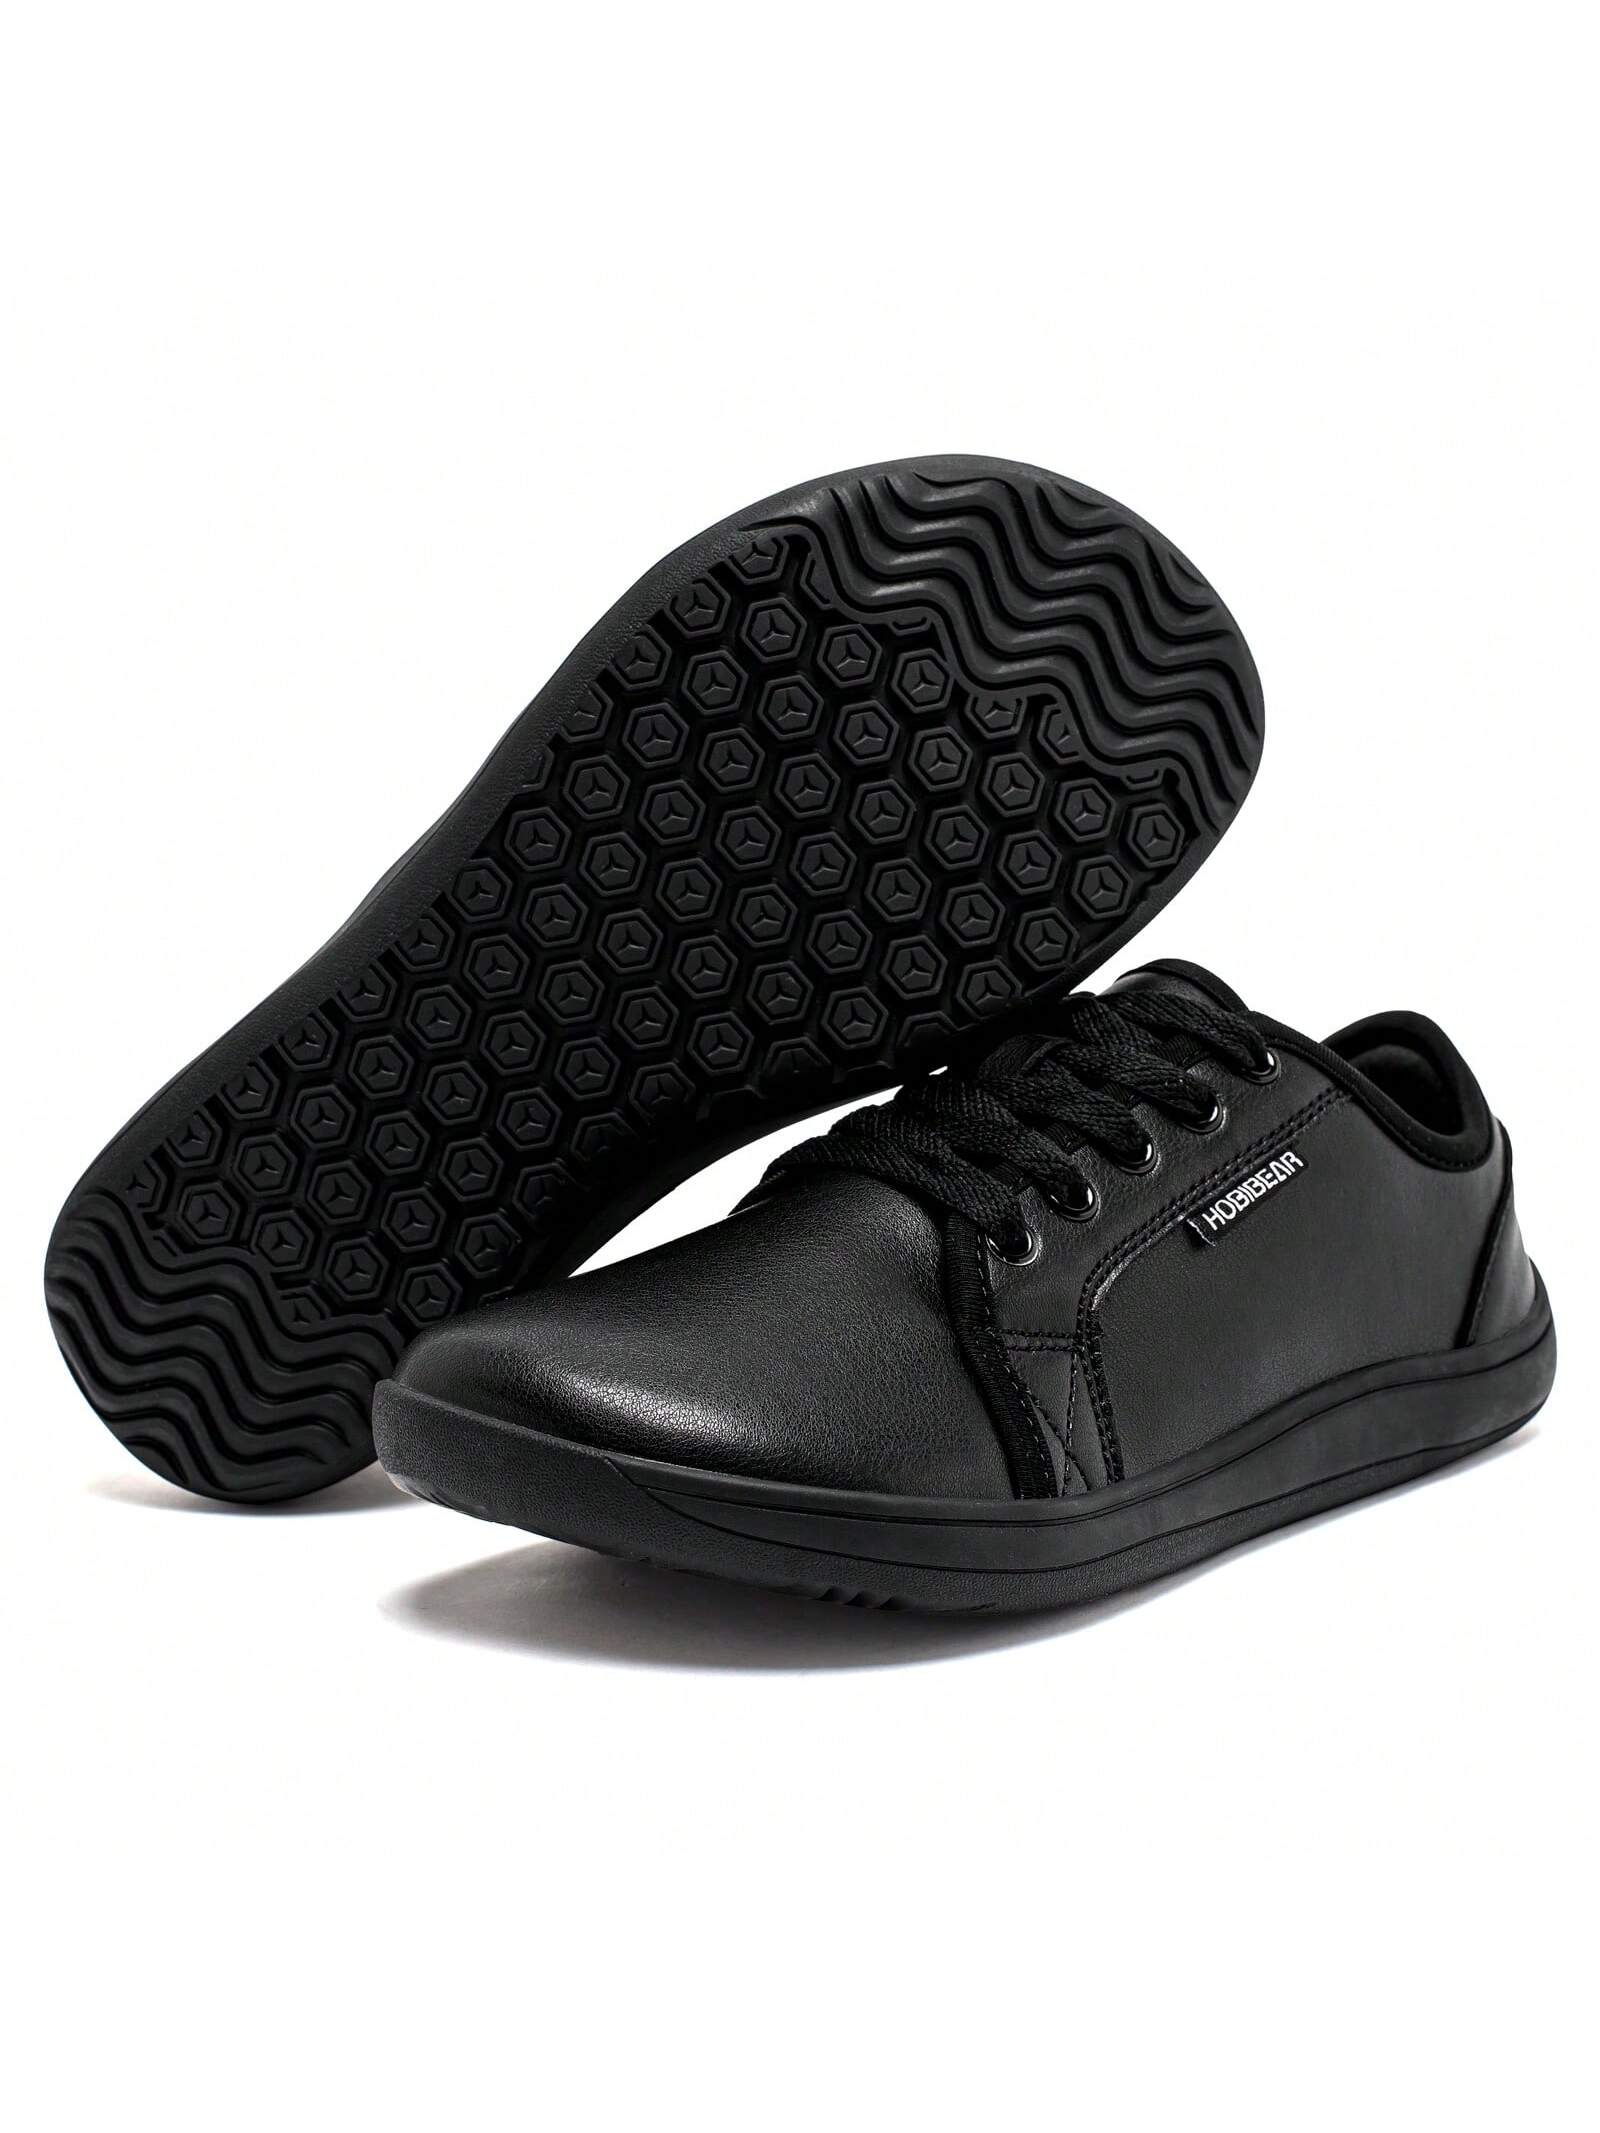 Спортивная обувь унисекс с широким носком, черный